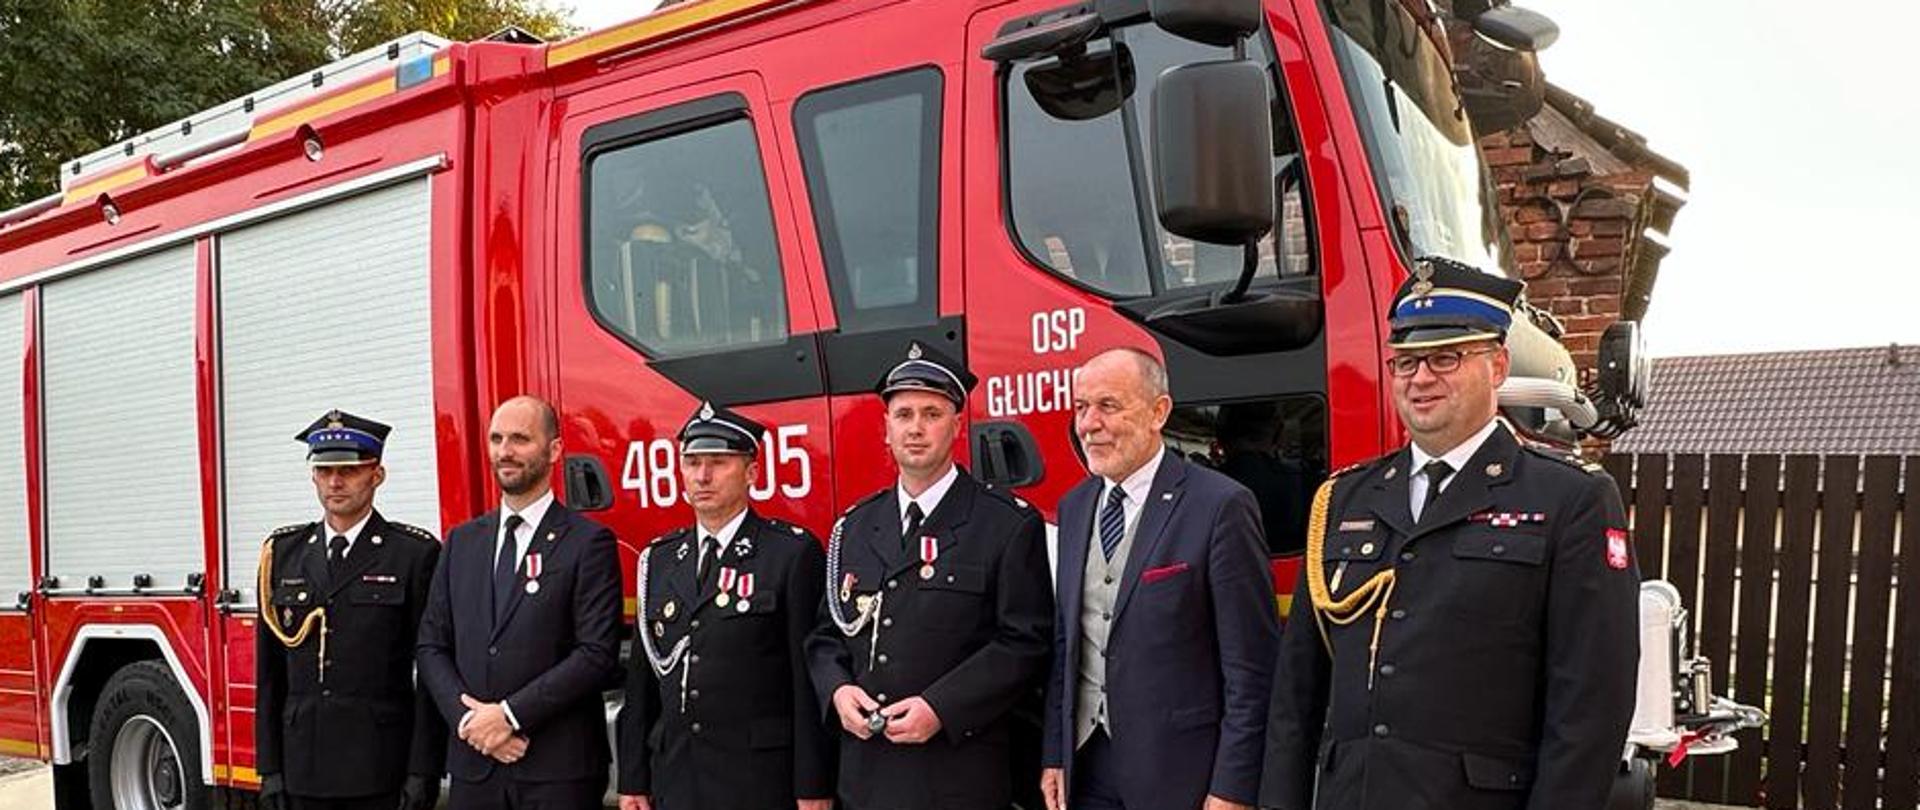 kilku strażaków stoi obok siebie, ubrani w mundury ze sznurem i w rogatywce, za nimi stoi czerwony samochód strażacki